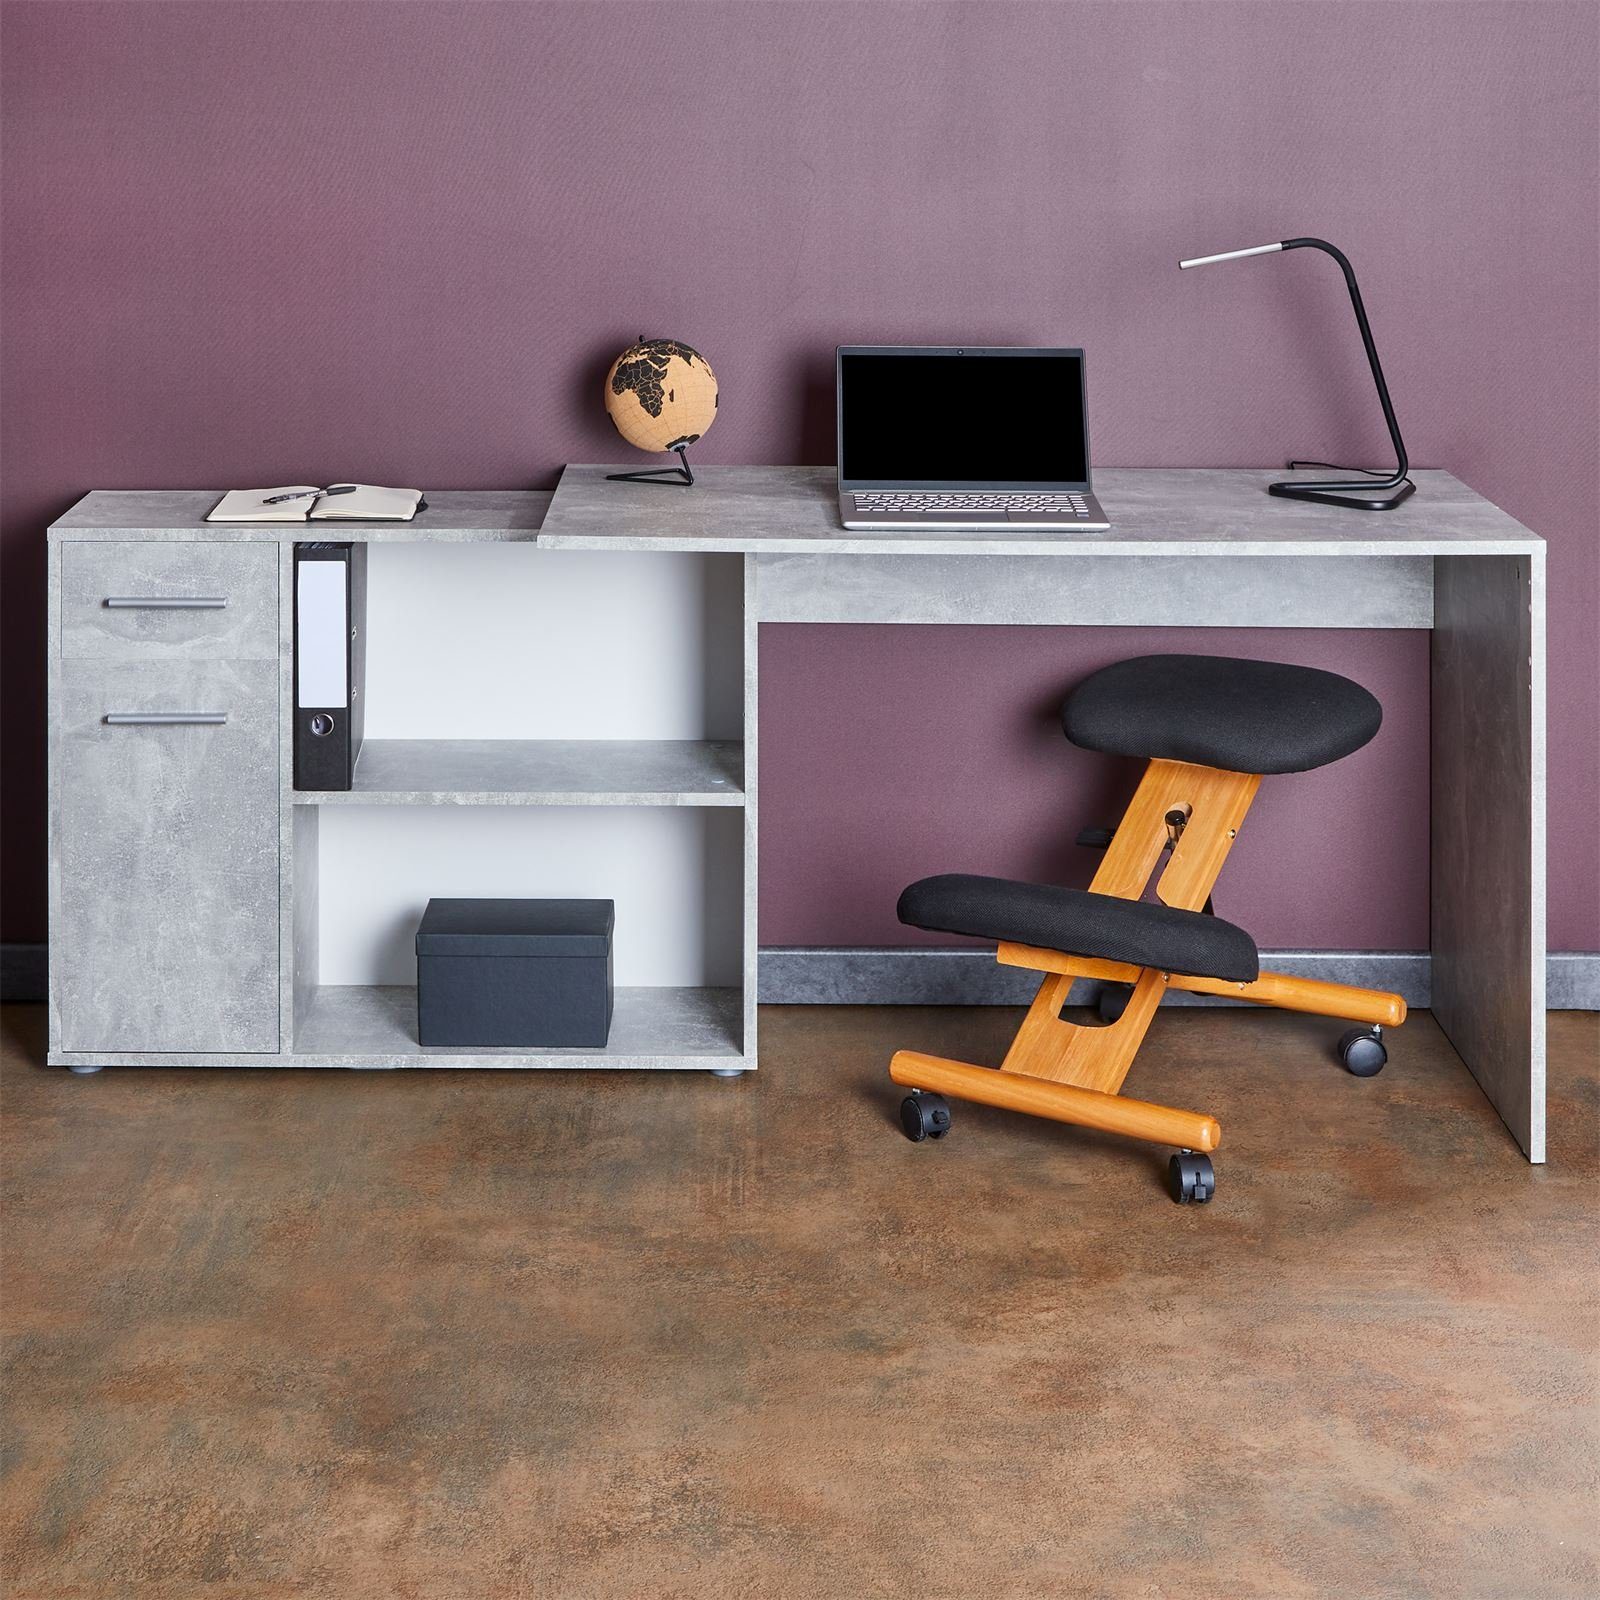 IDIMEX Eckschreibtisch ISOTTA, Winkel Regal mit Bürotisch Schreibtisch Computertisch Eckschreibtisch Betonoptik